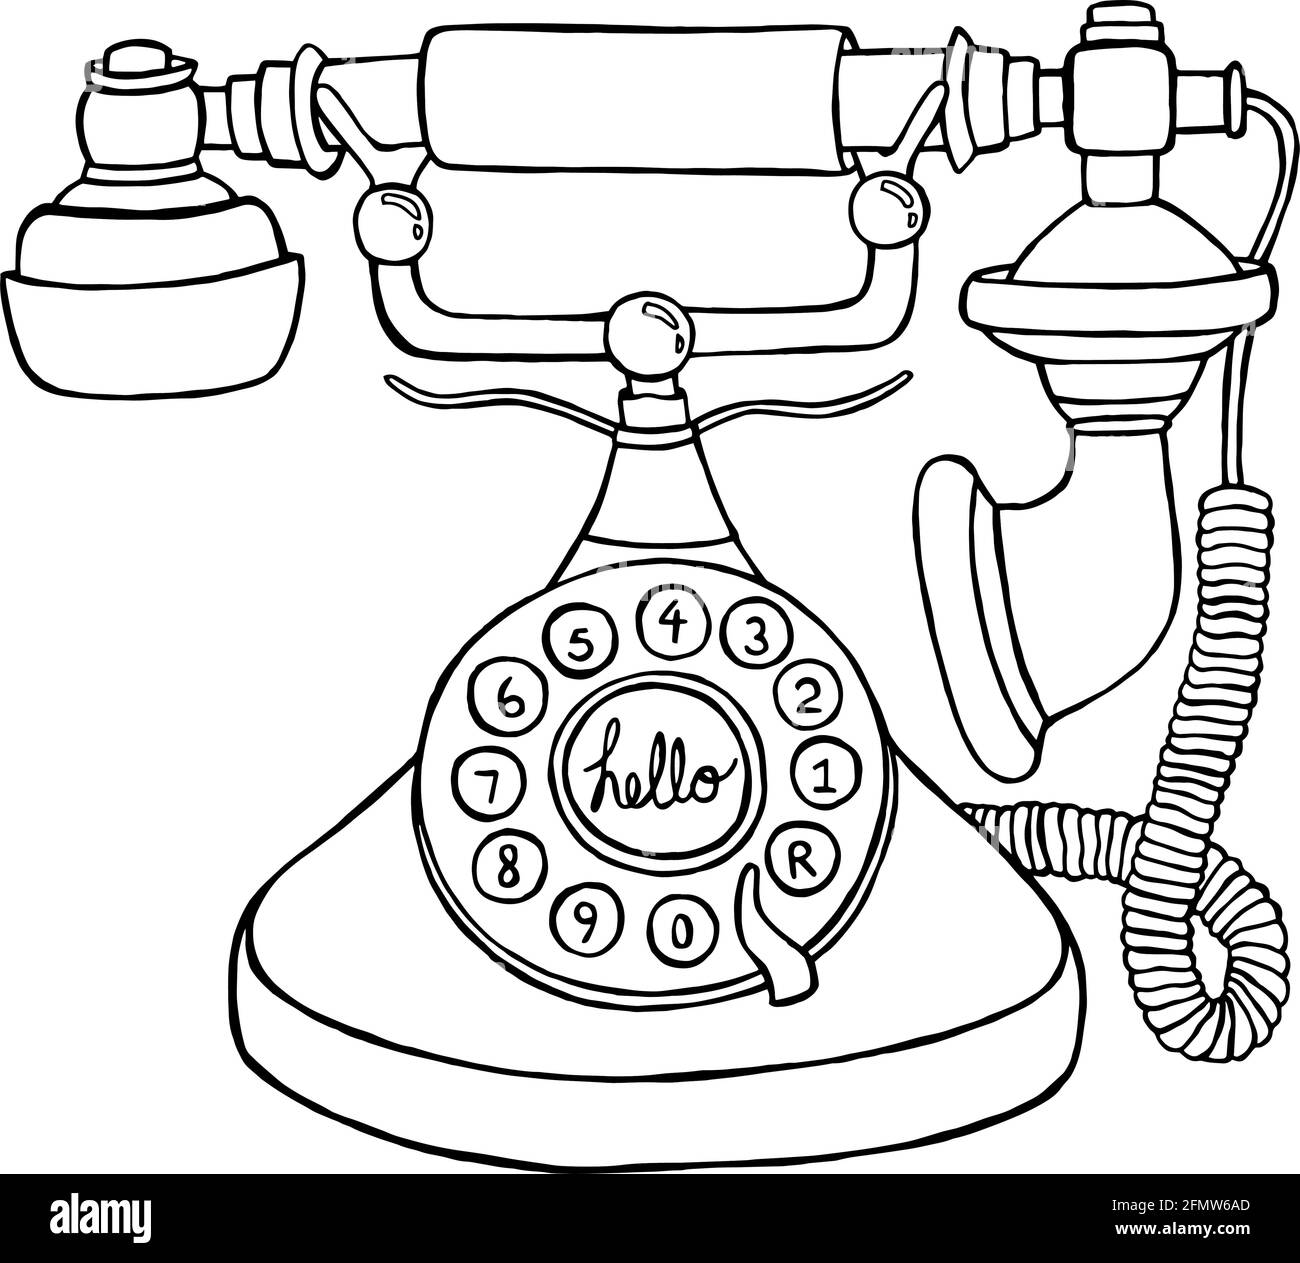 Illustration de style vintage Phone Doodle au format vectoriel. Croquis dessiné à la main du téléphone rotatif antique Illustration de Vecteur